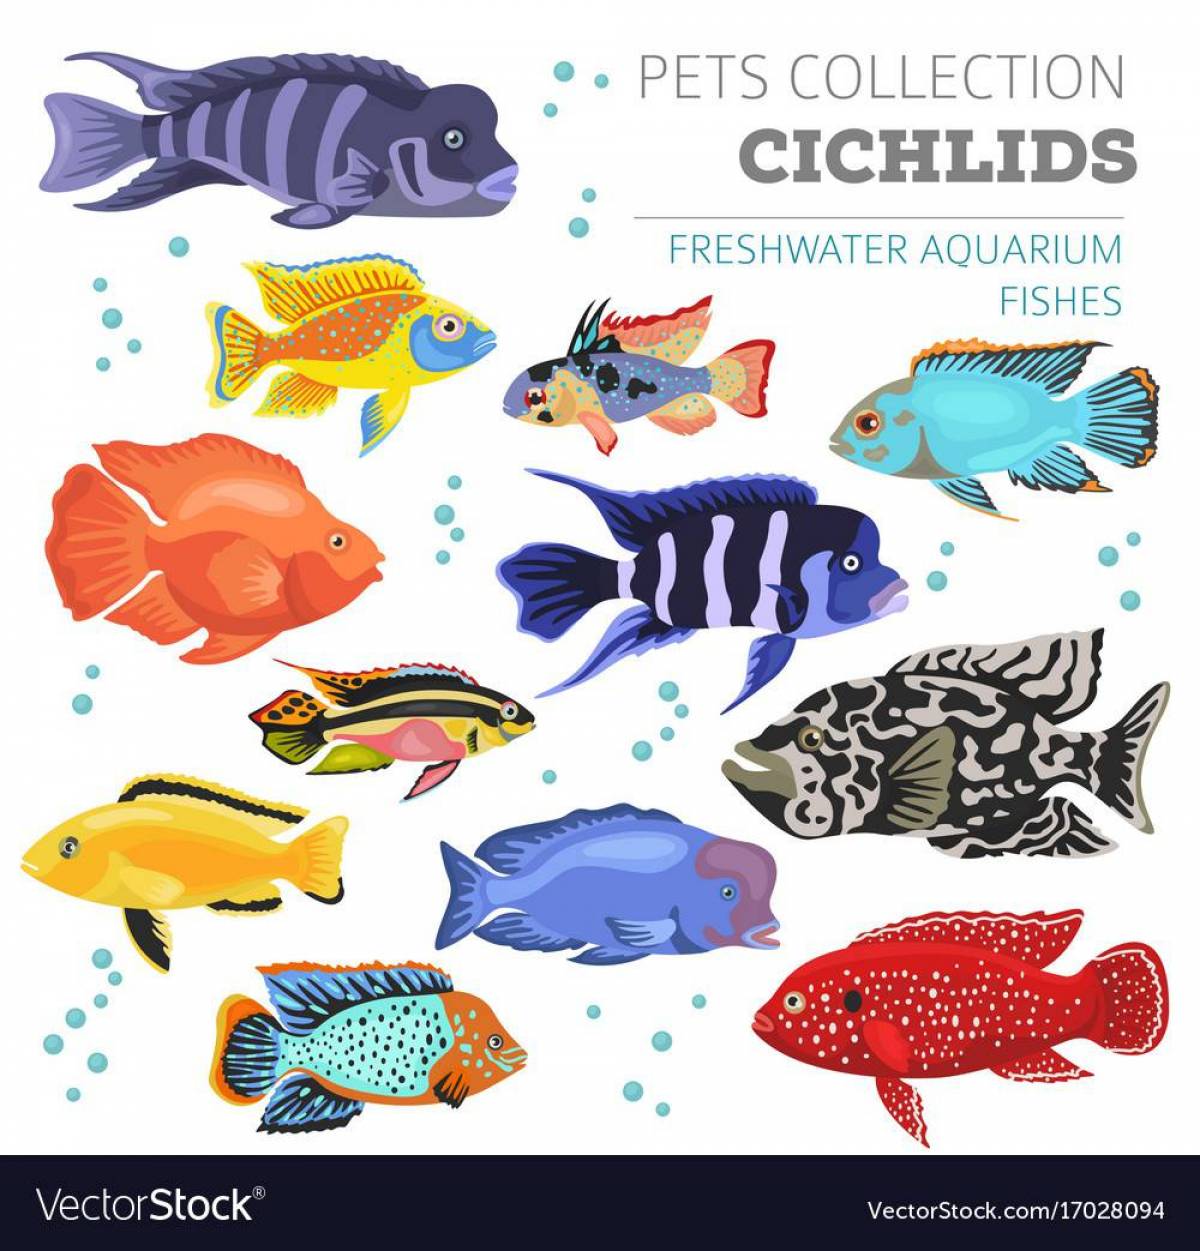 Аквариумные рыбки с названиями для детей #19